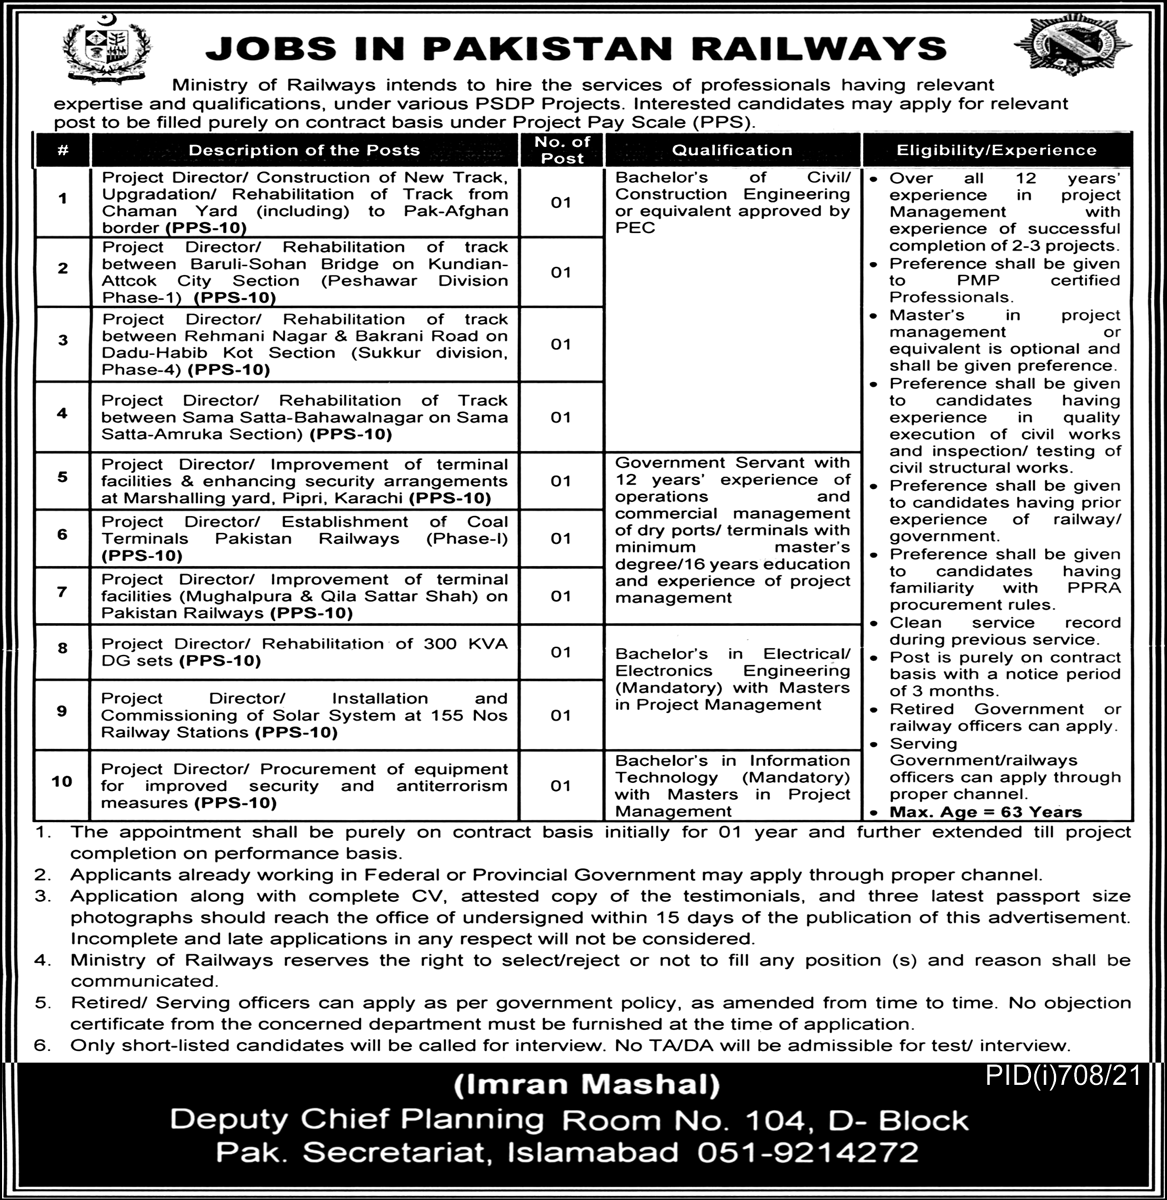 Jobs in Pakistan railway